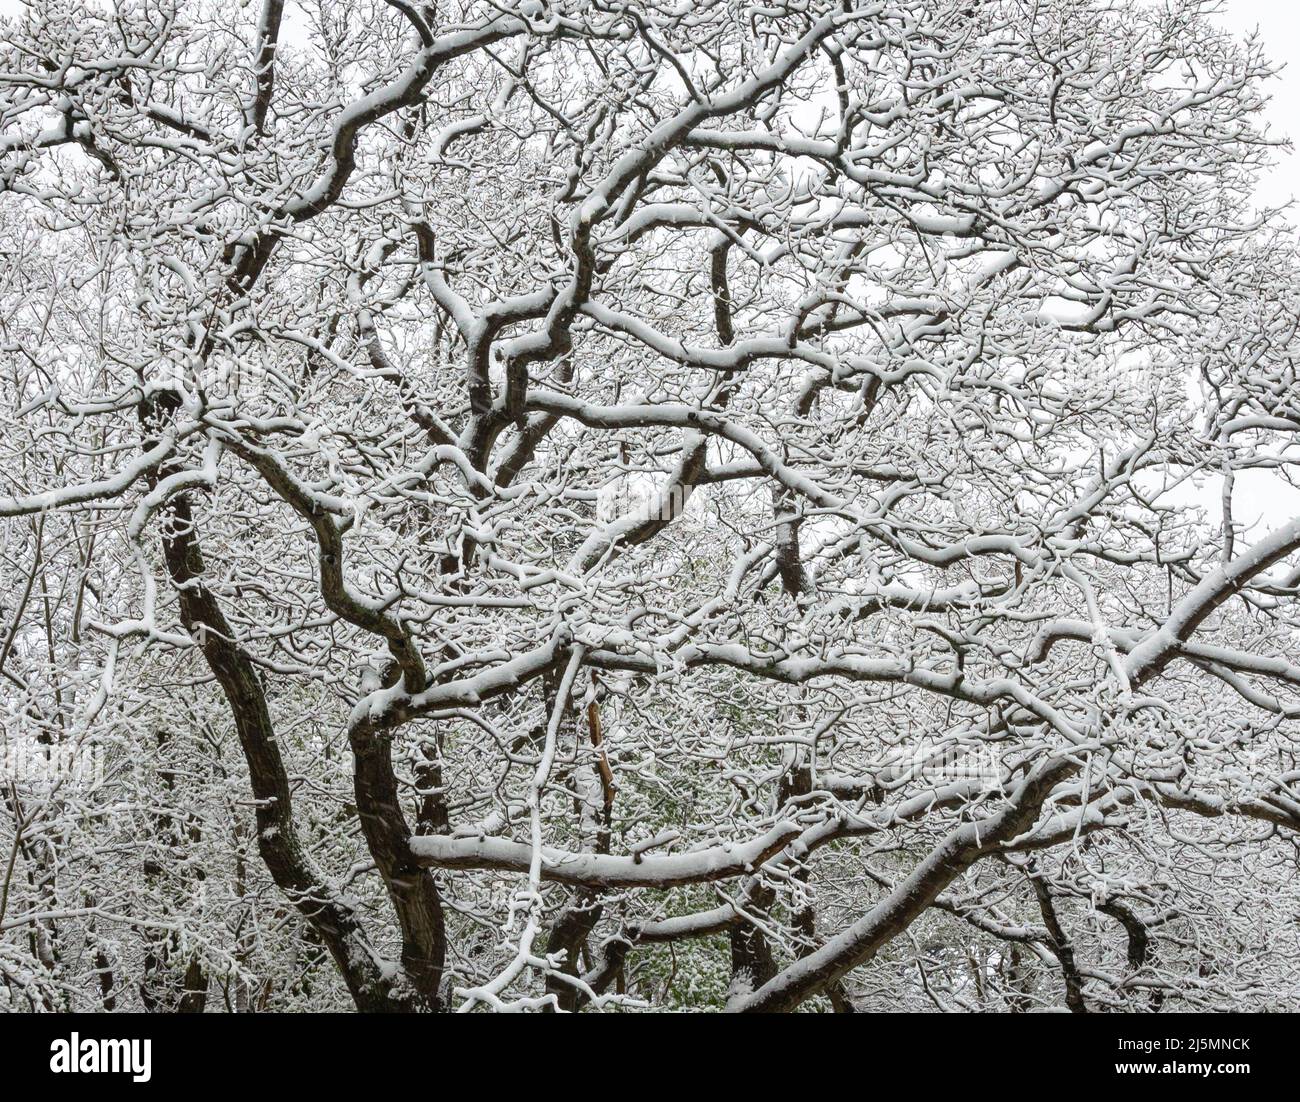 Image d'hiver pittoresque des branches d'arbres couvertes de neige fraîche Banque D'Images